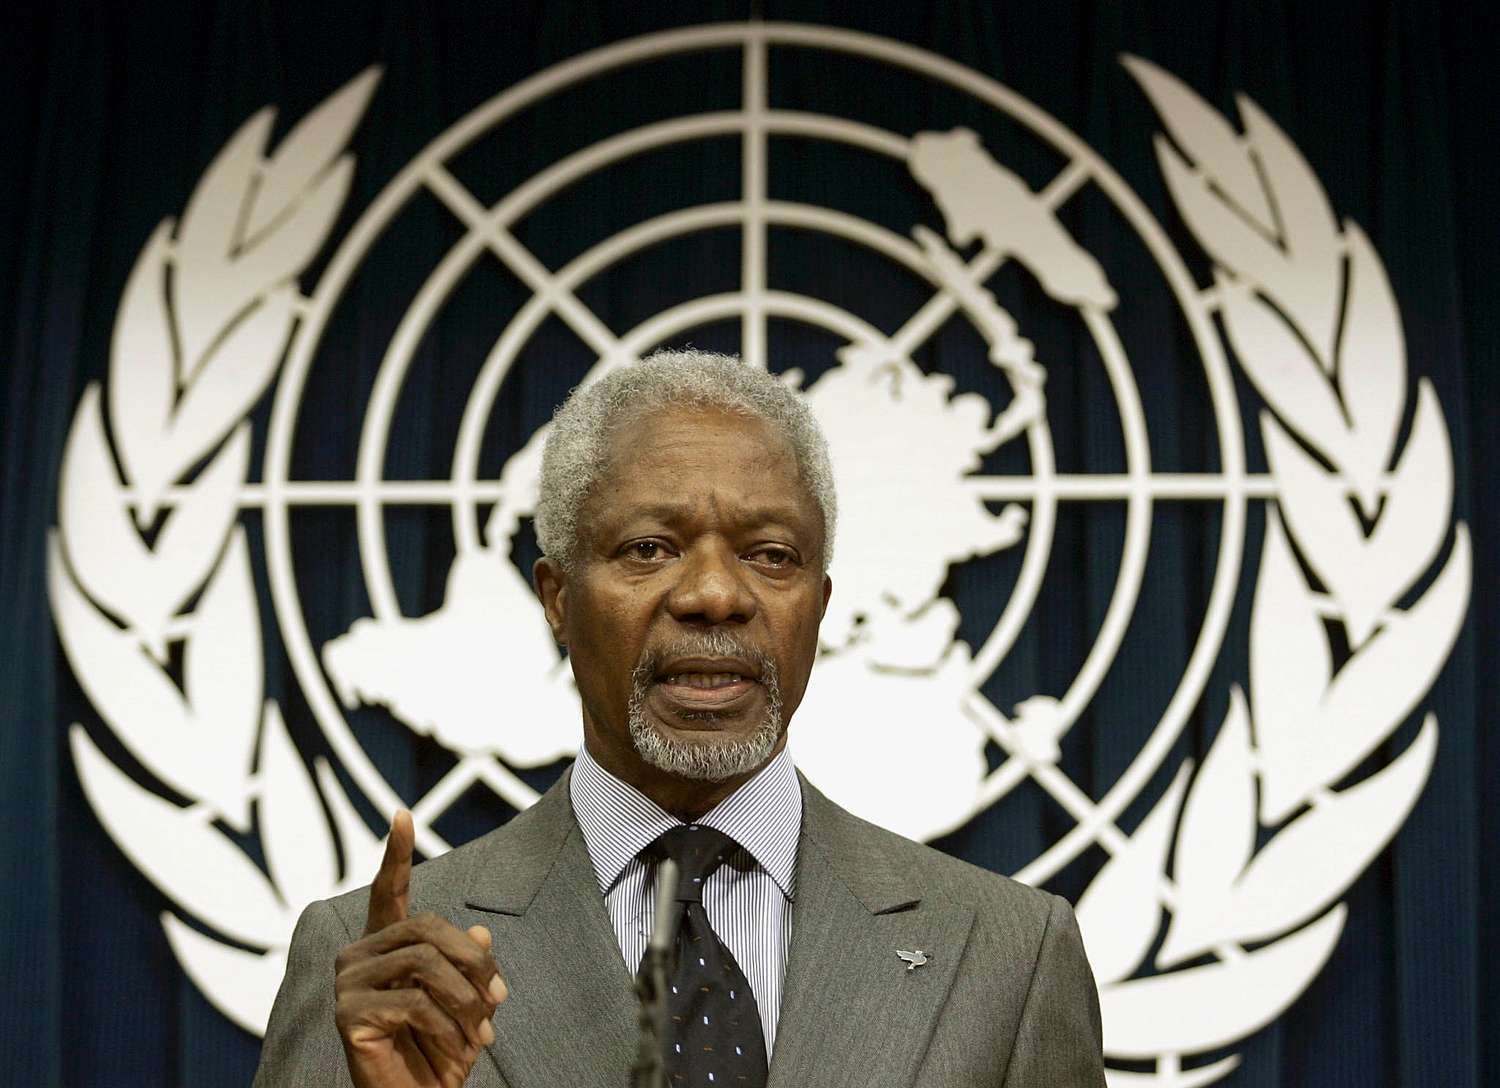 Falleció Kofi Annan, el exsecretario general de la ONU y Nobel de la Paz